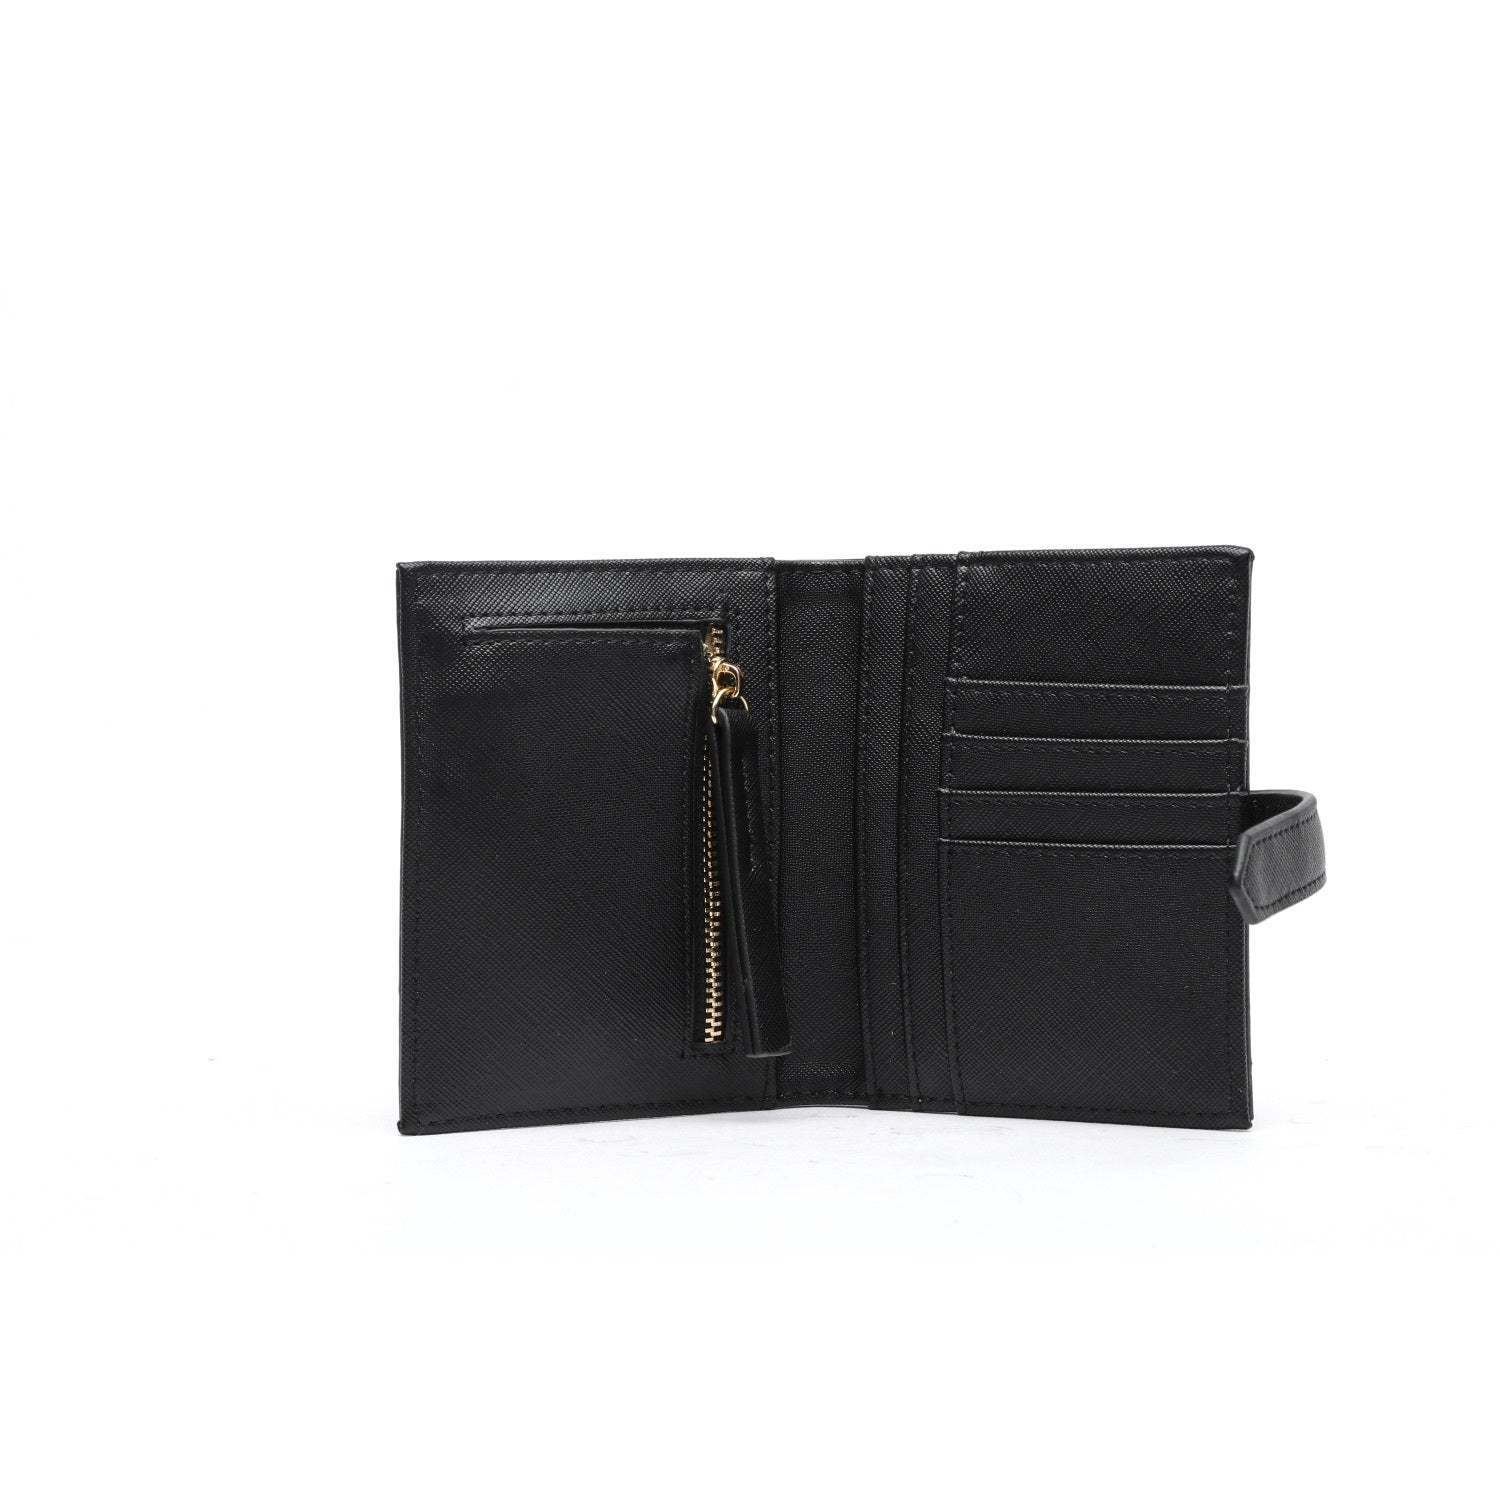 Kate Hill - Tasha purse KH-22001 - Black-3